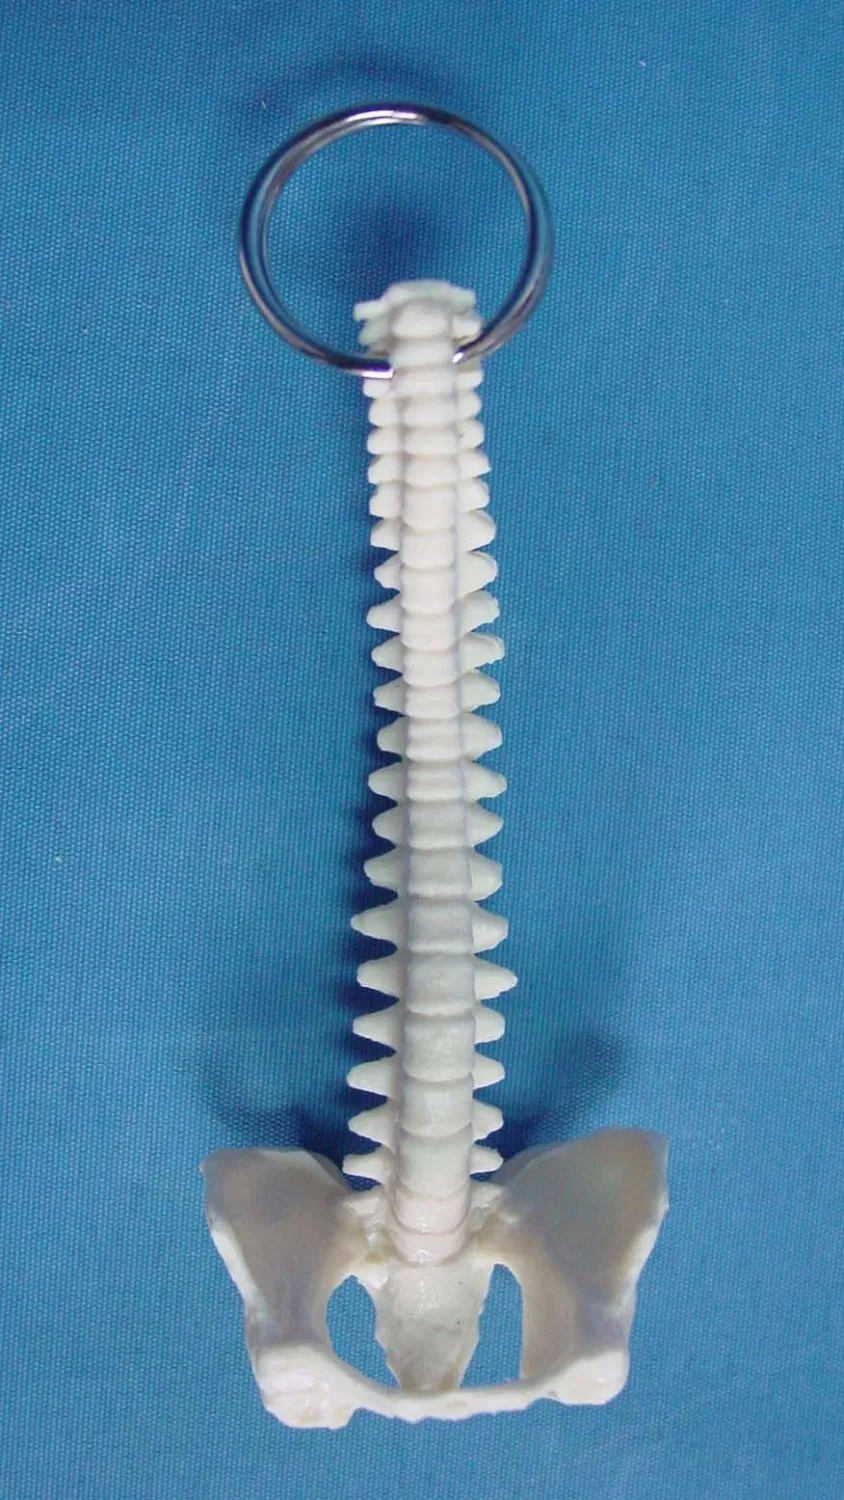 Мини Женская Анатомия человеческий позвоночник модель скелета горло анатомический череп для изучения анатомии скульптура голова модель тела мышечная кость художника